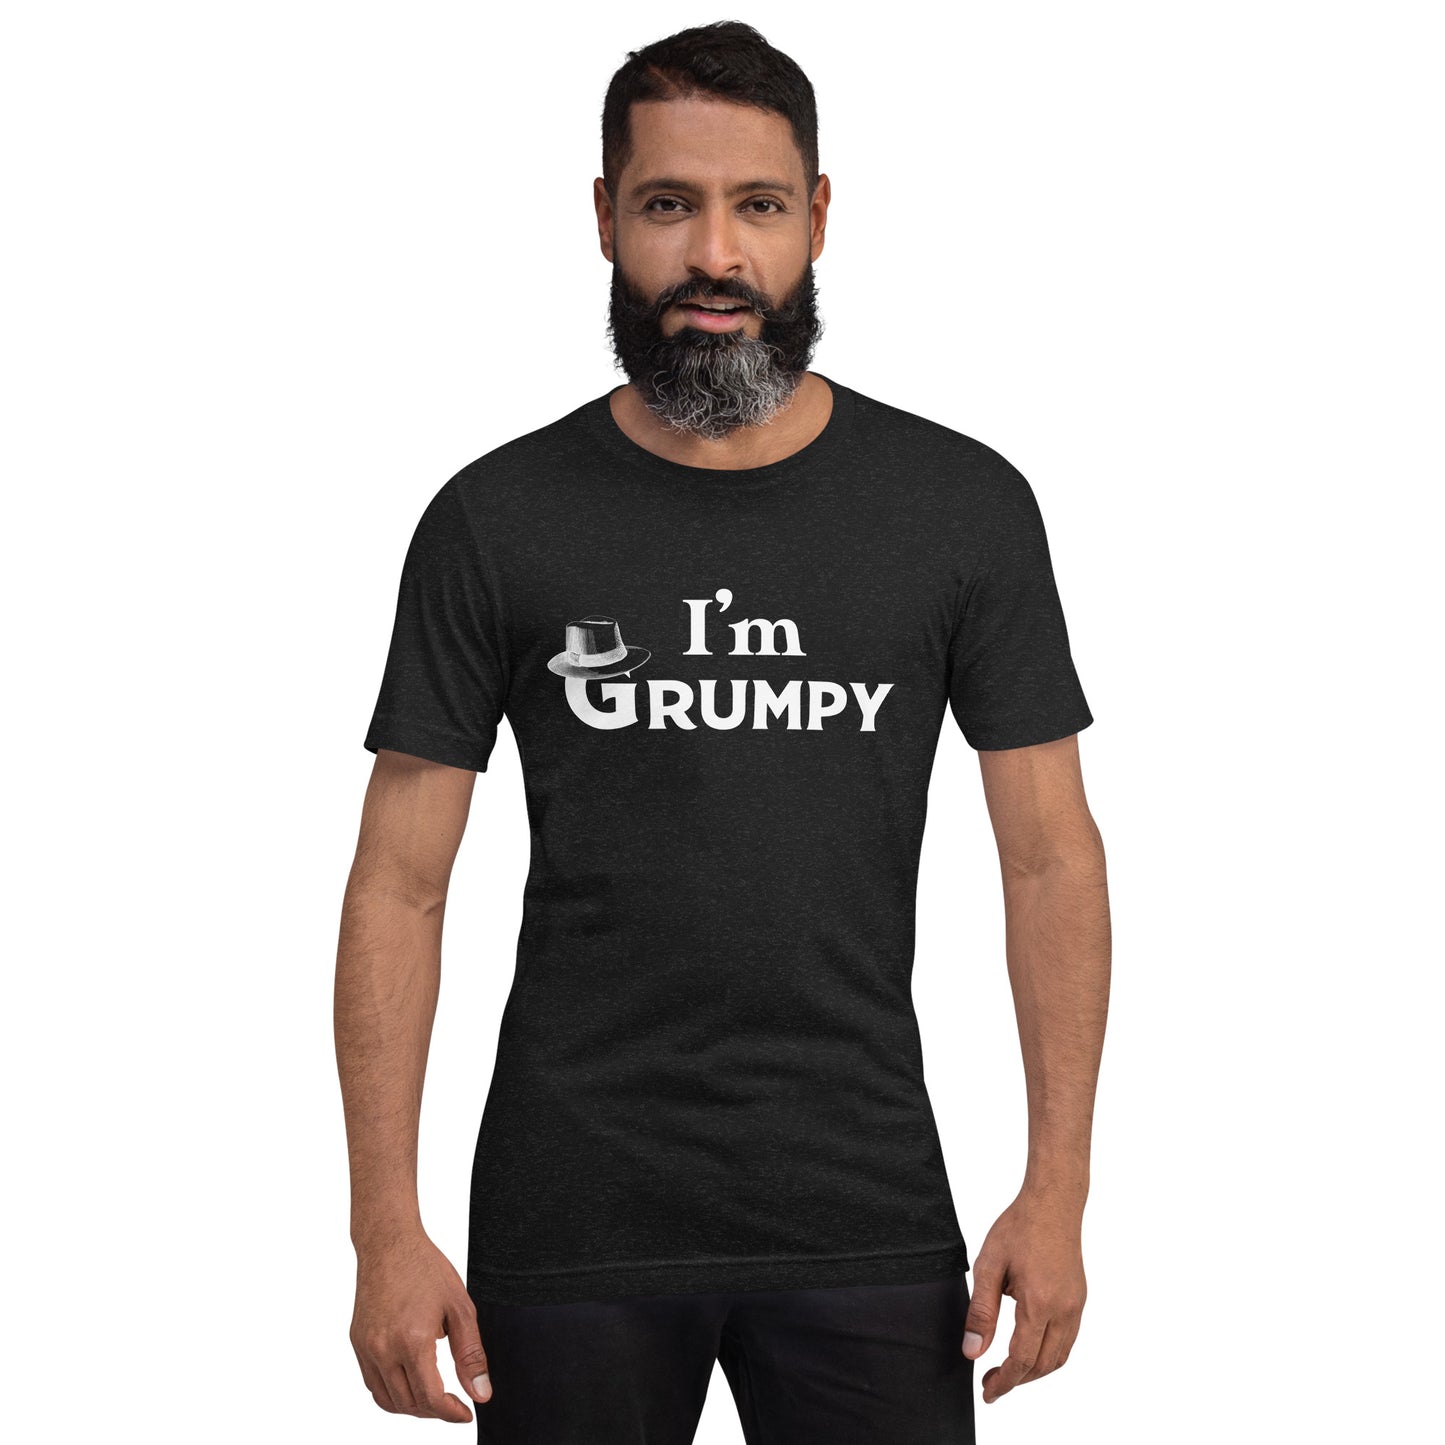 I'm Grumpy T-Shirt